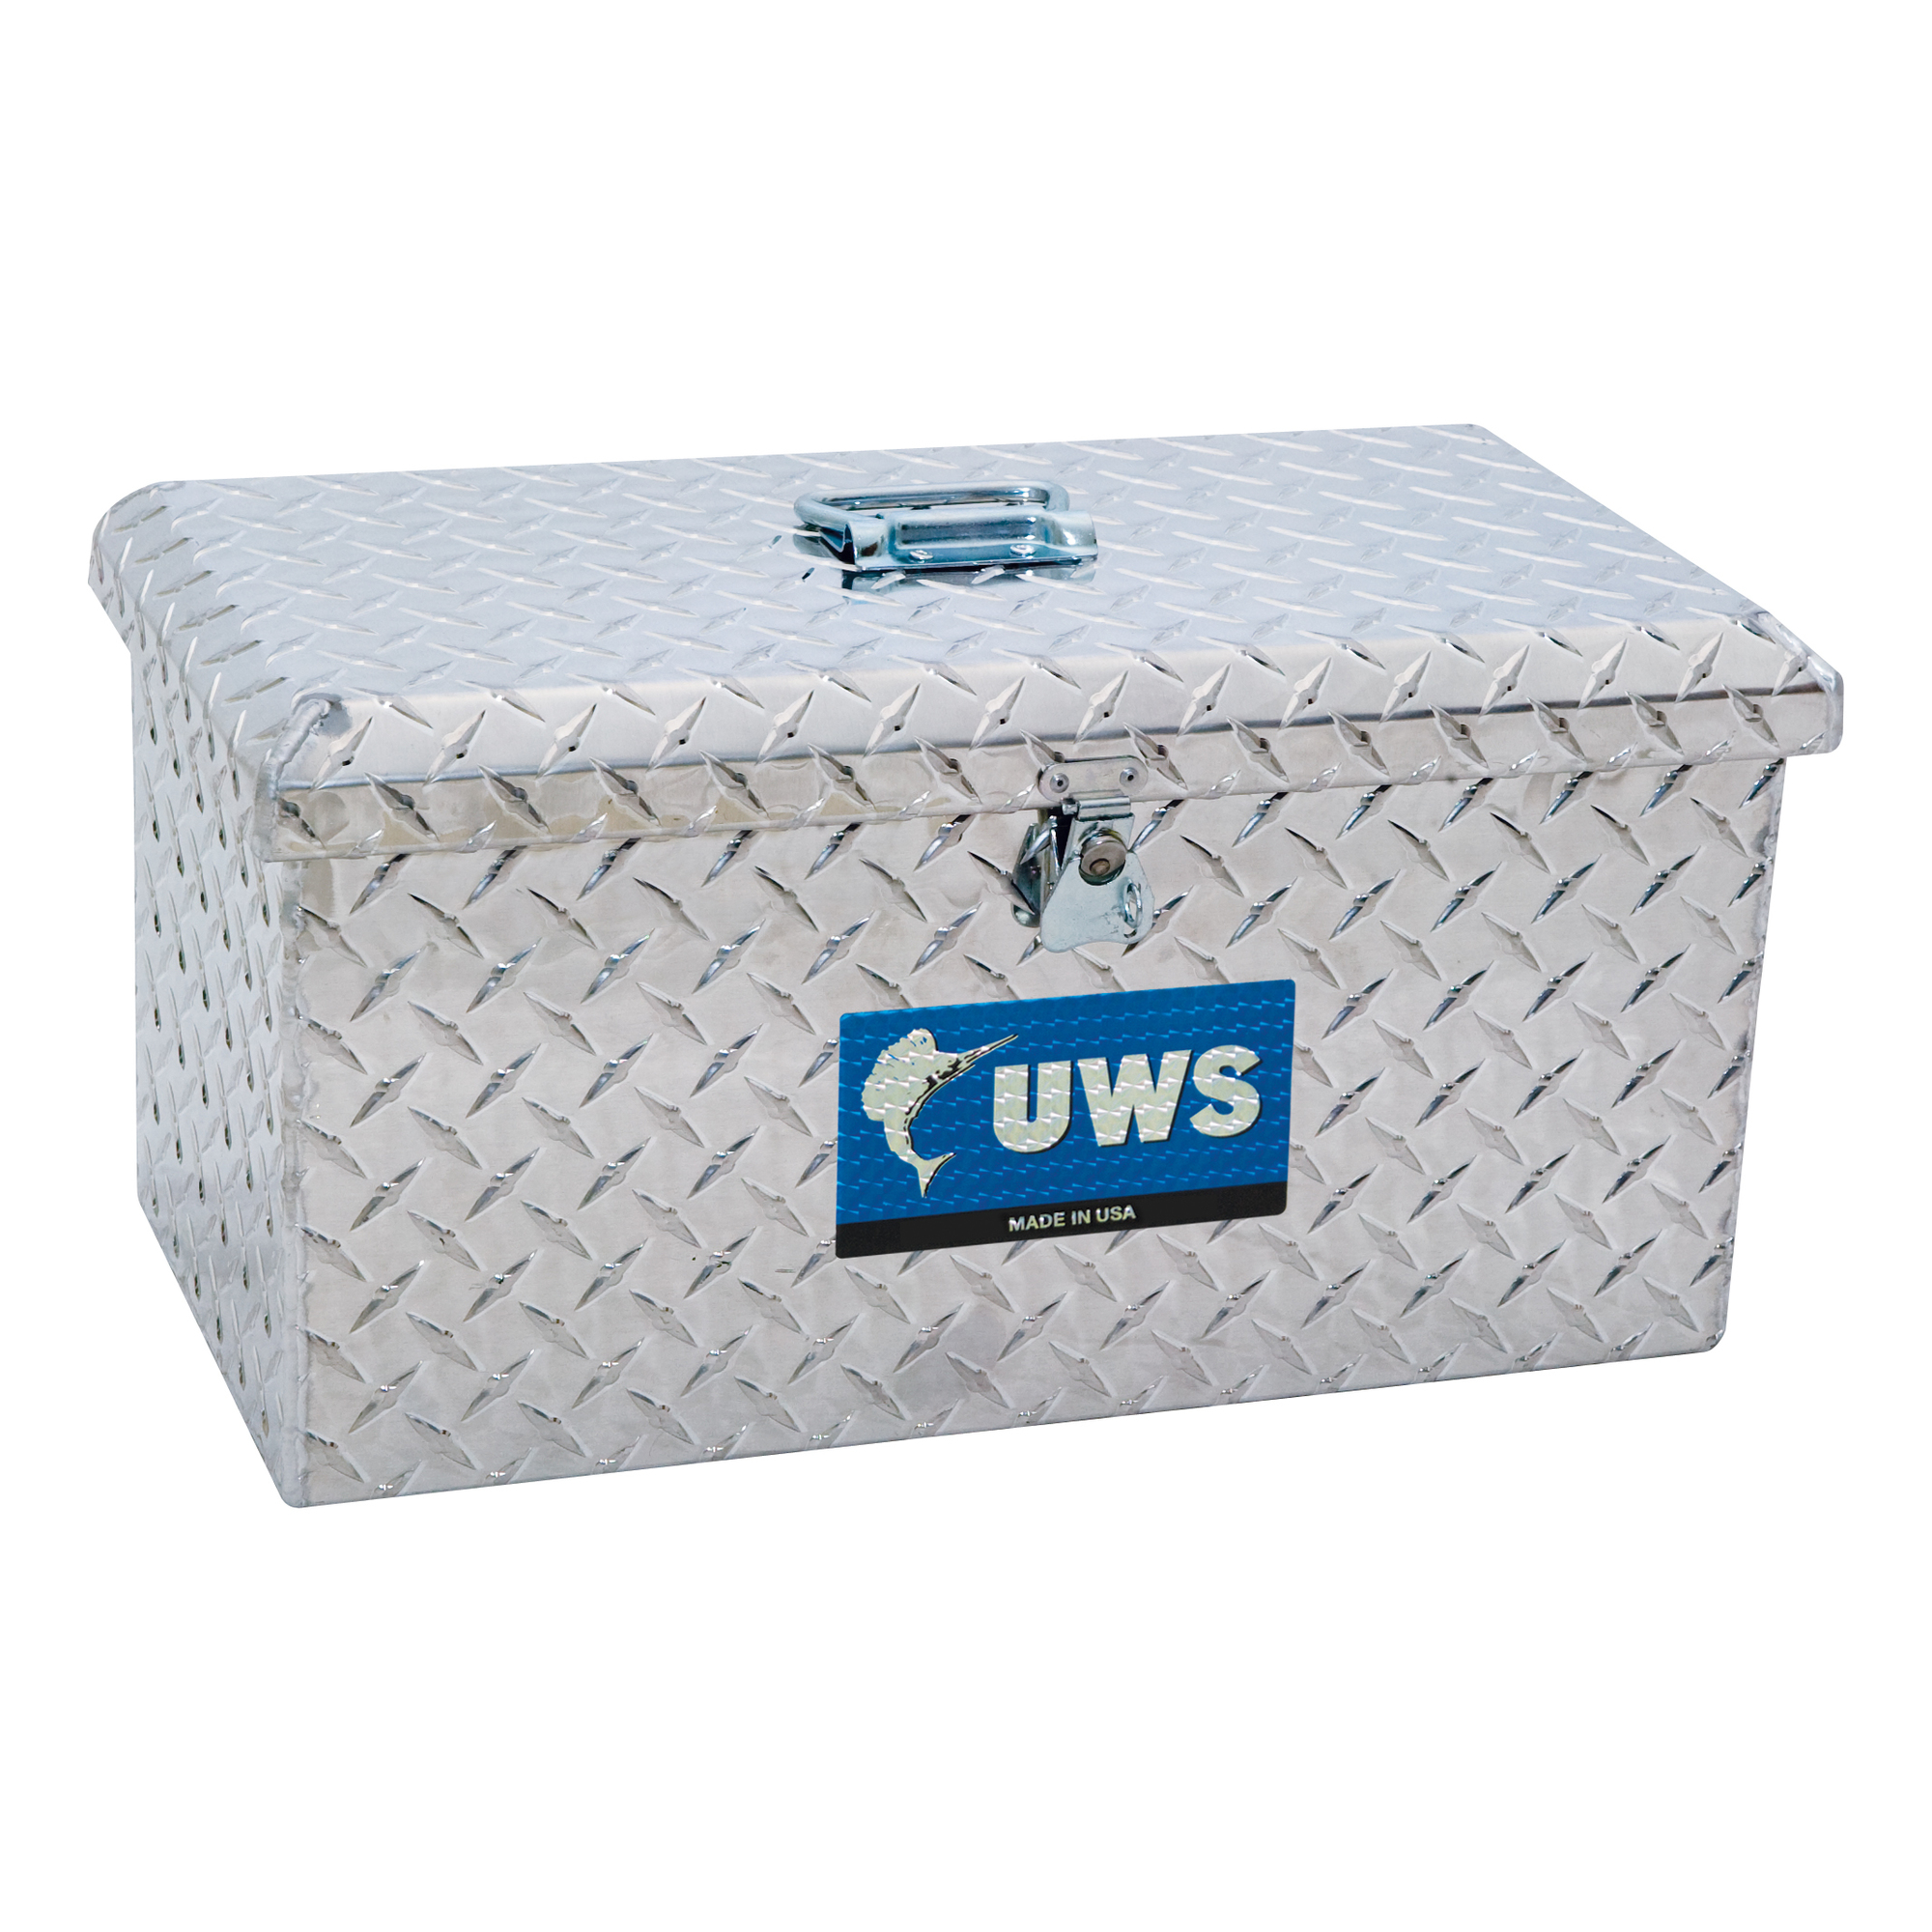 UWS, Tote Box, Width 21 in, Material Aluminum, Color Finish Bright Aluminum, Model EC20111